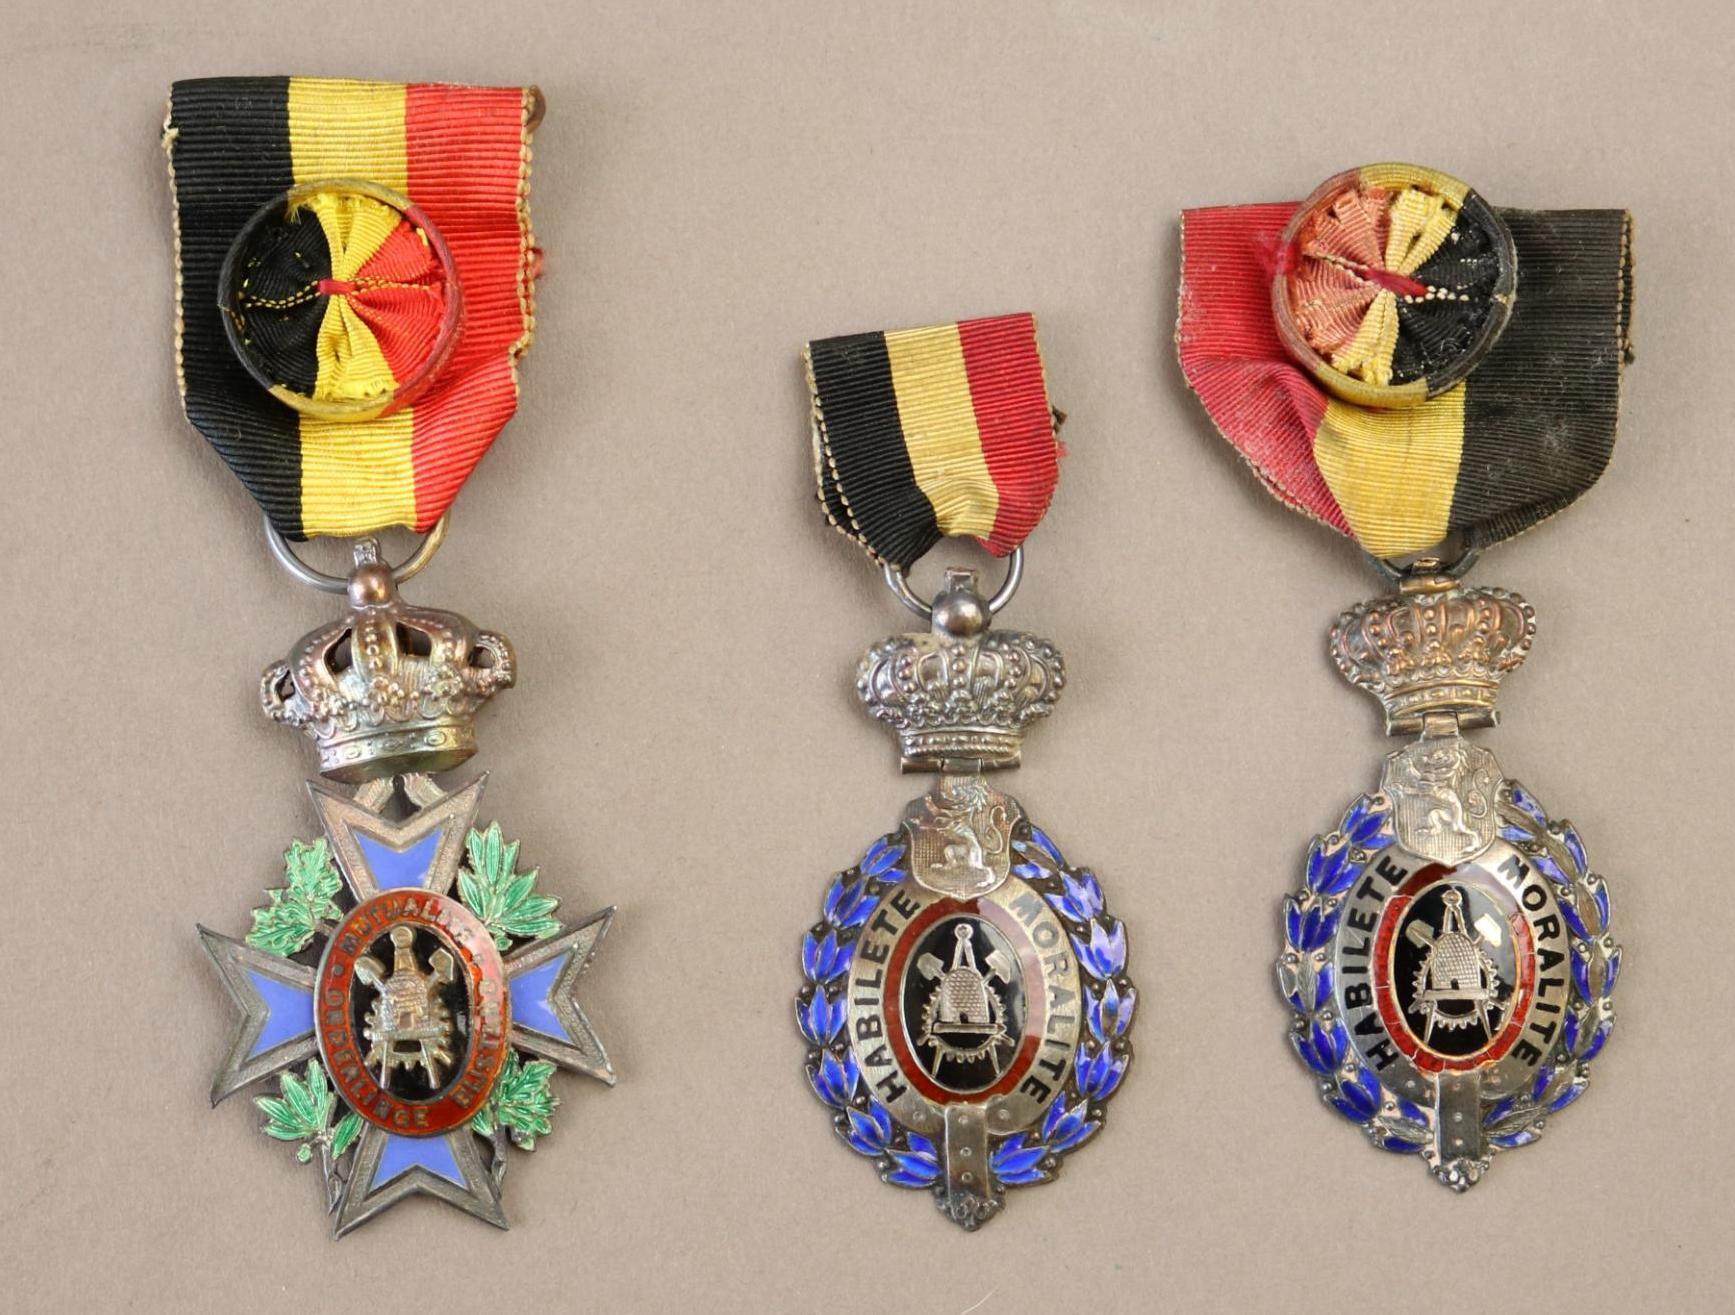 Belgian Medals